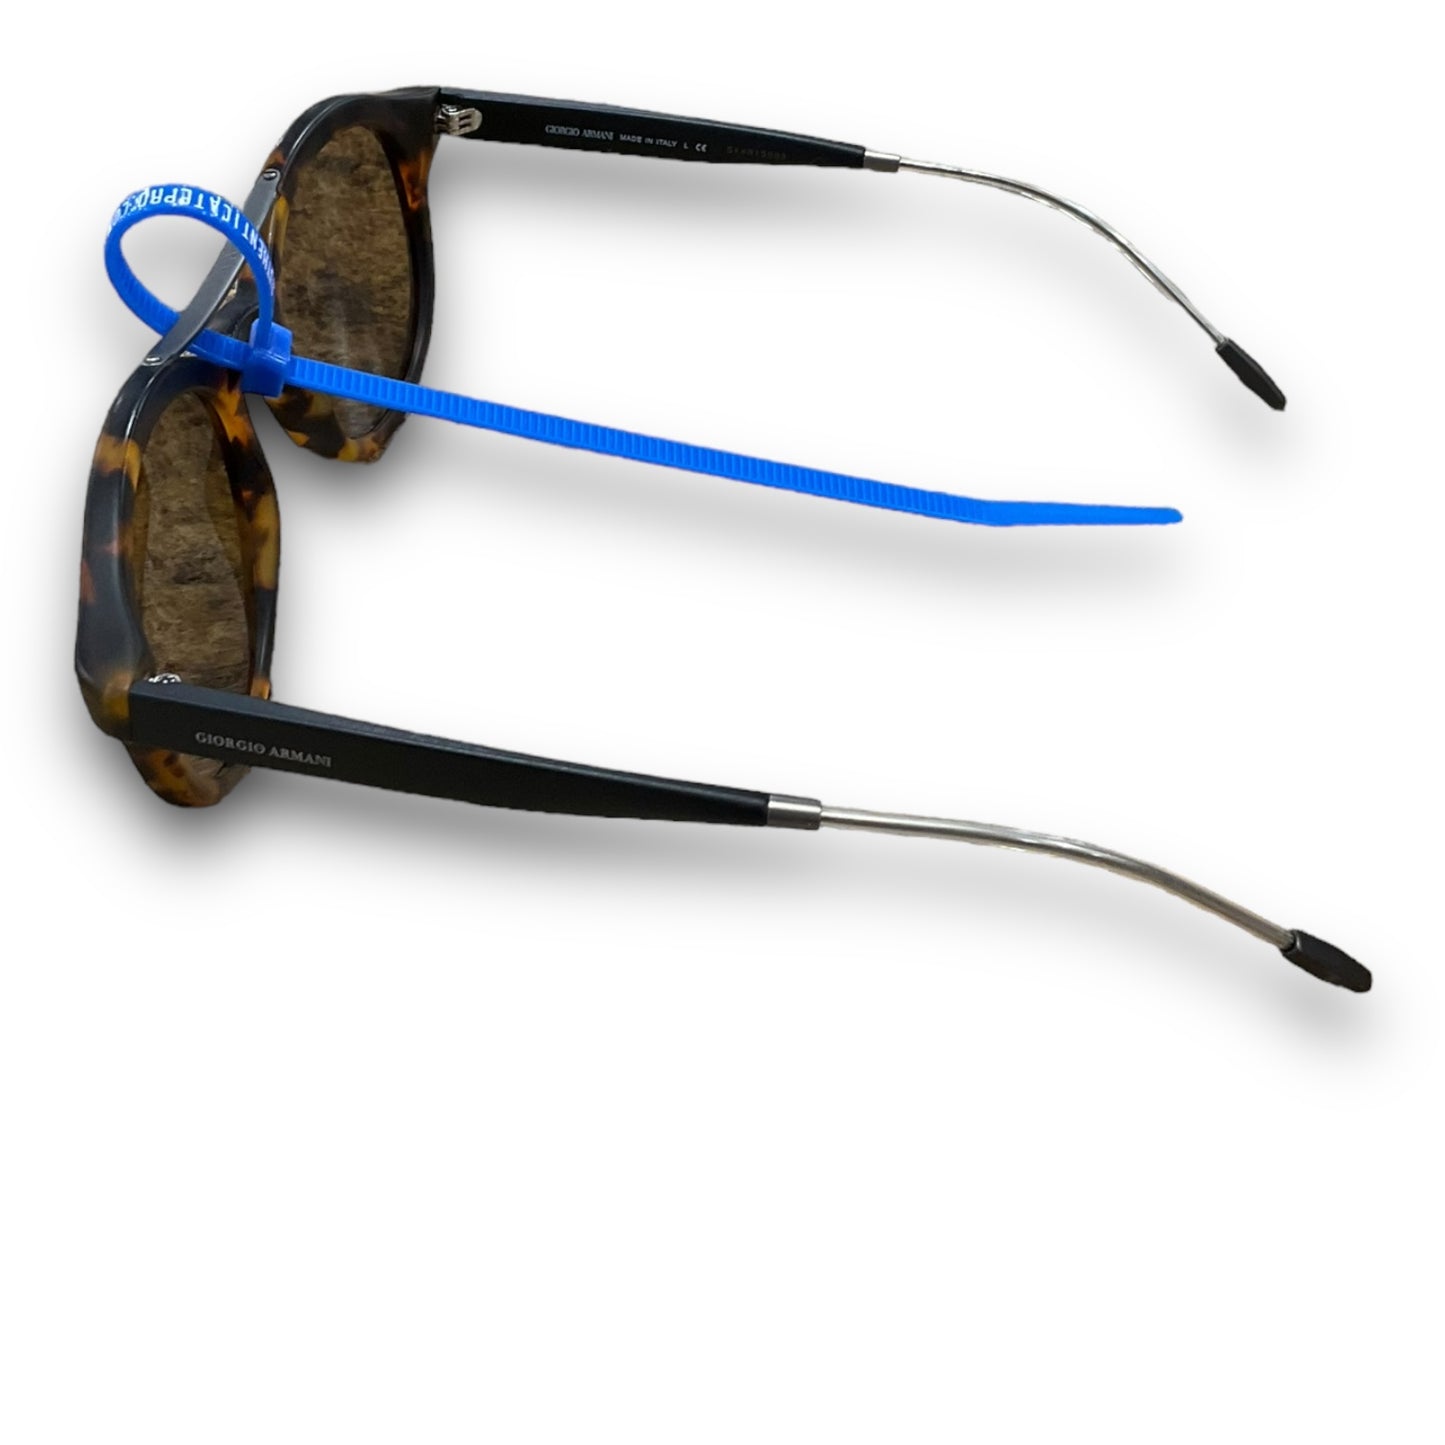 Sunglasses Designer By Giorgio Armani